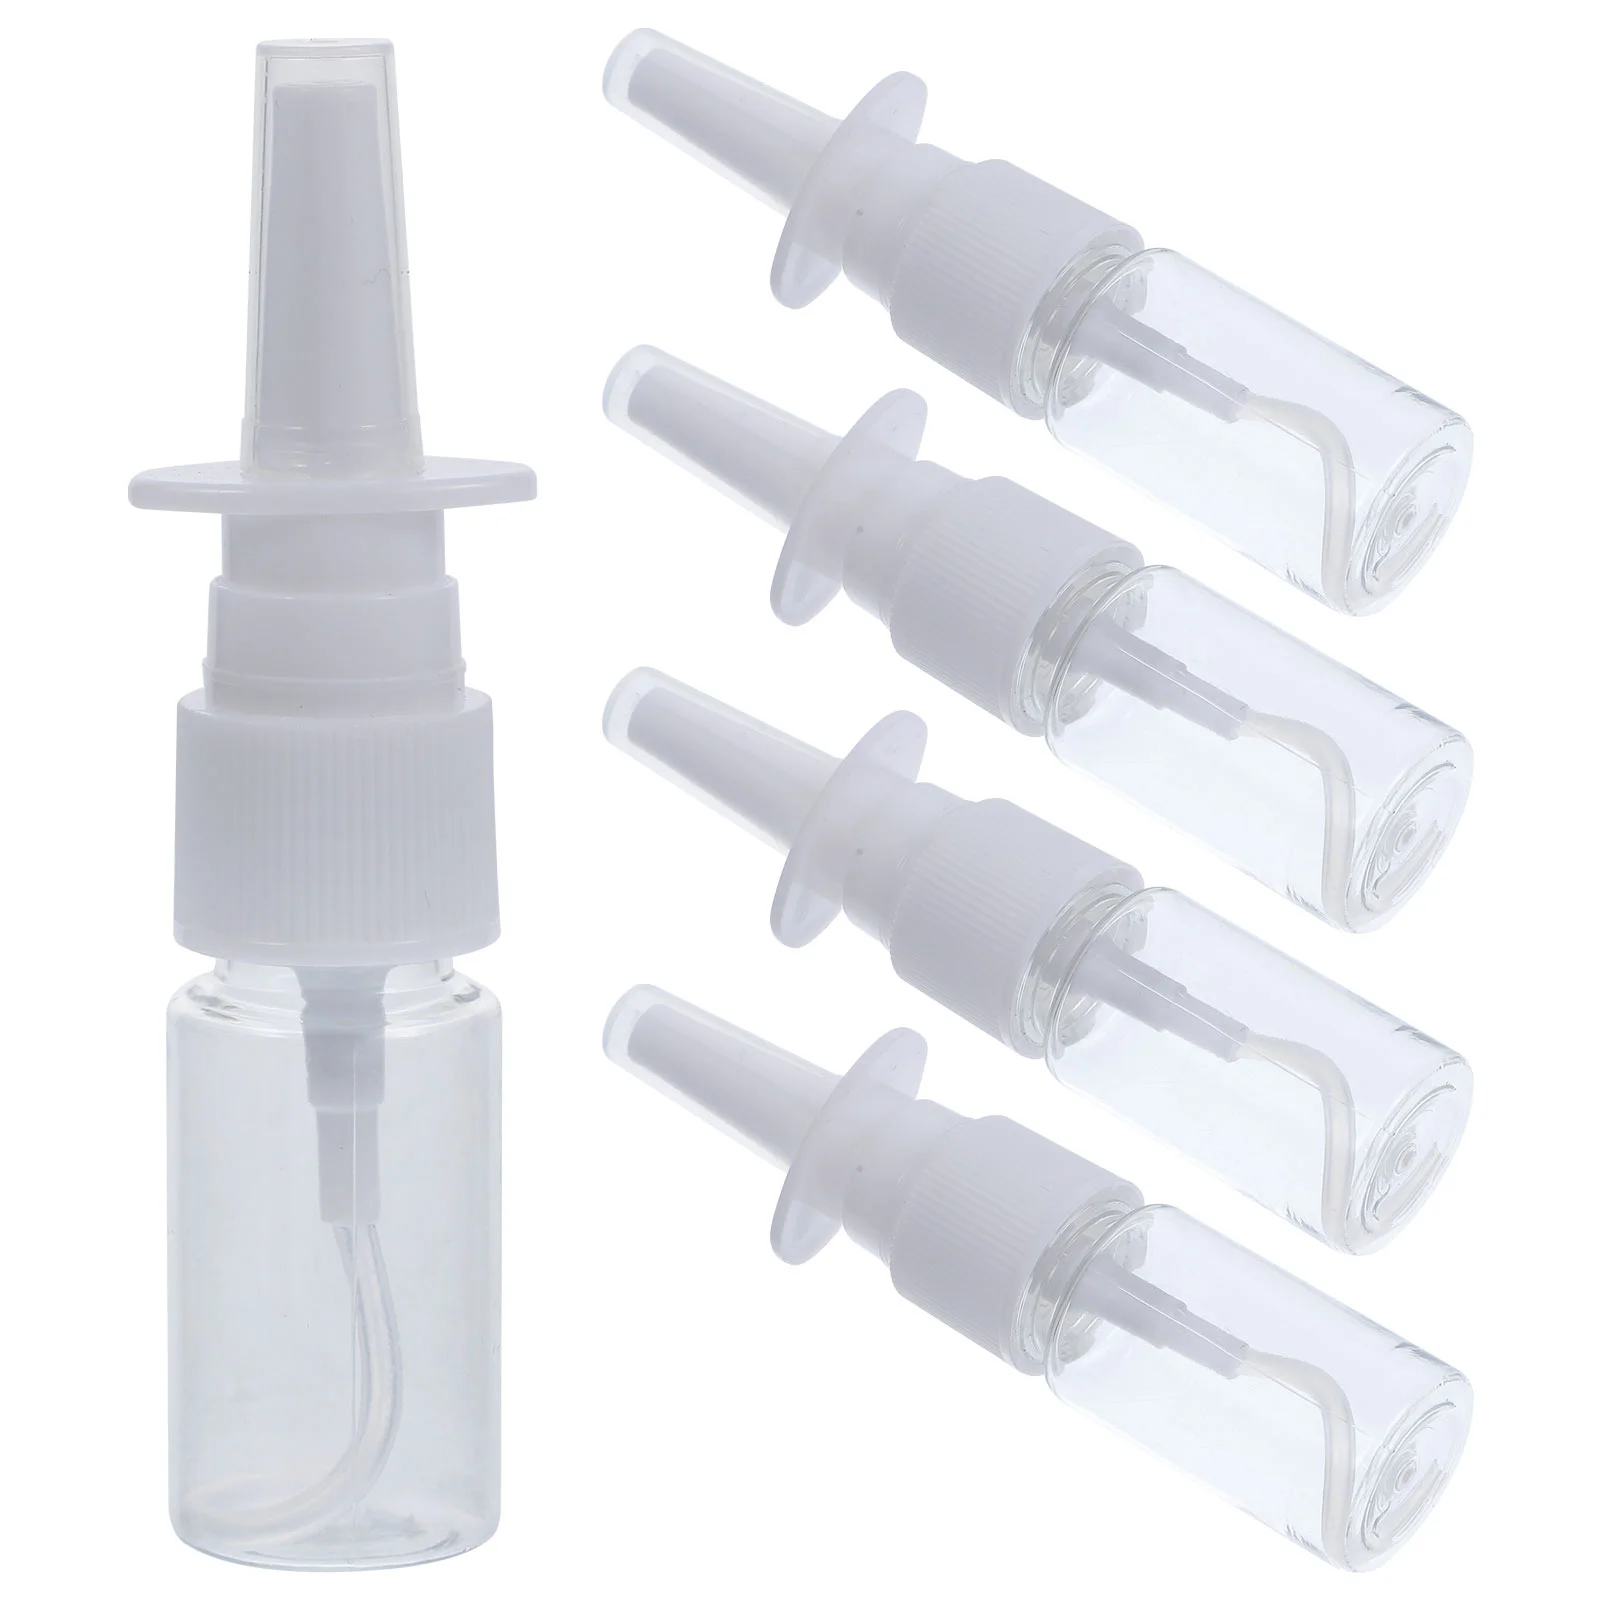 

HEALLILY Portable Nasal Spray Bottle 10ml Rhinitis Mist Nasal Sprayer Transparent Bottle 5Pcs Nose powder dispenser